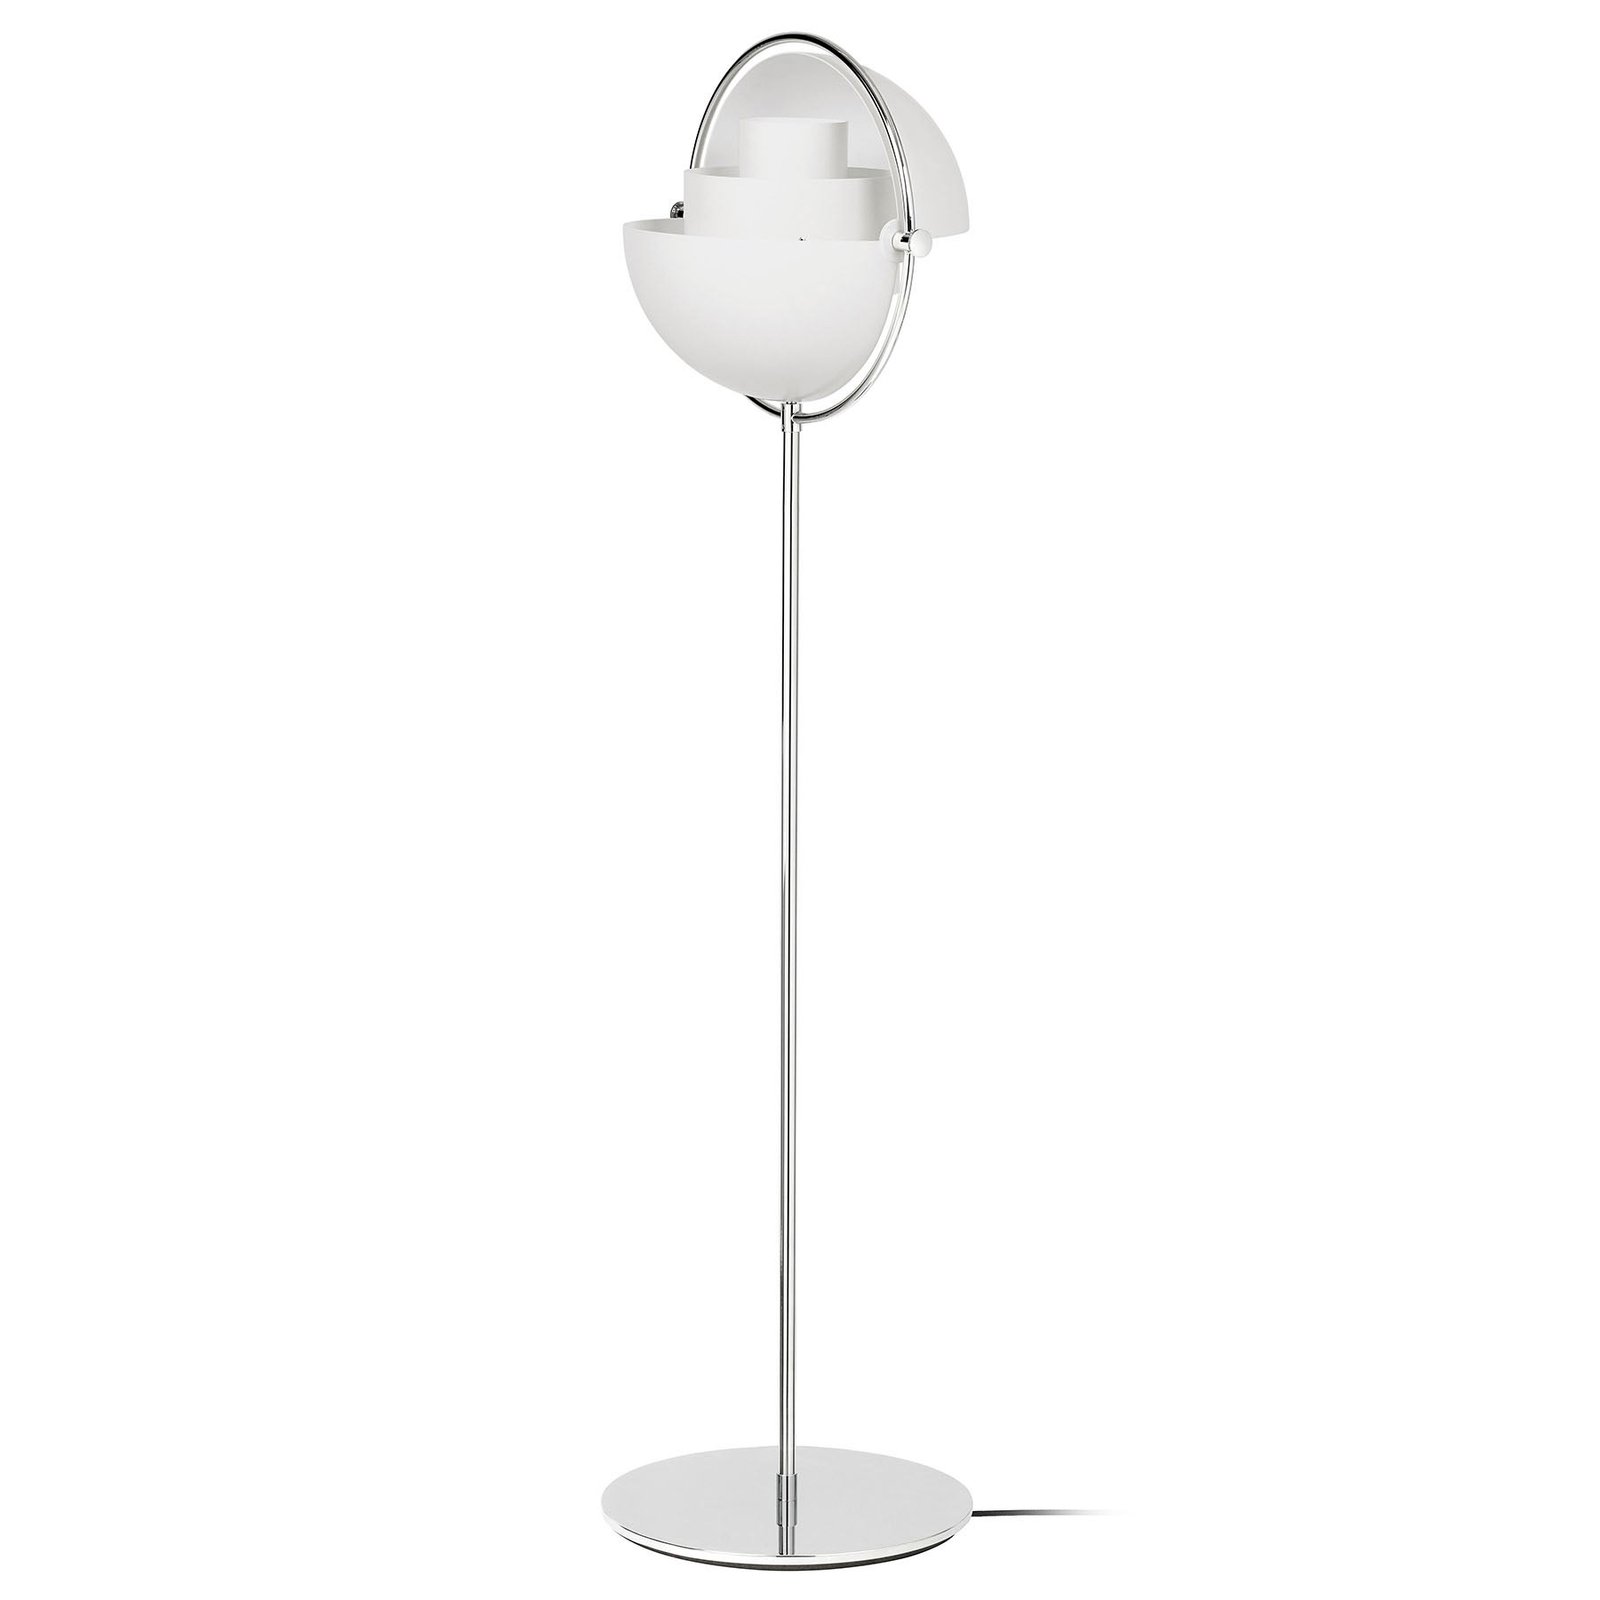 Stojací lampa GUBI Multi-Lite, výška 148 cm, chrom/bílá